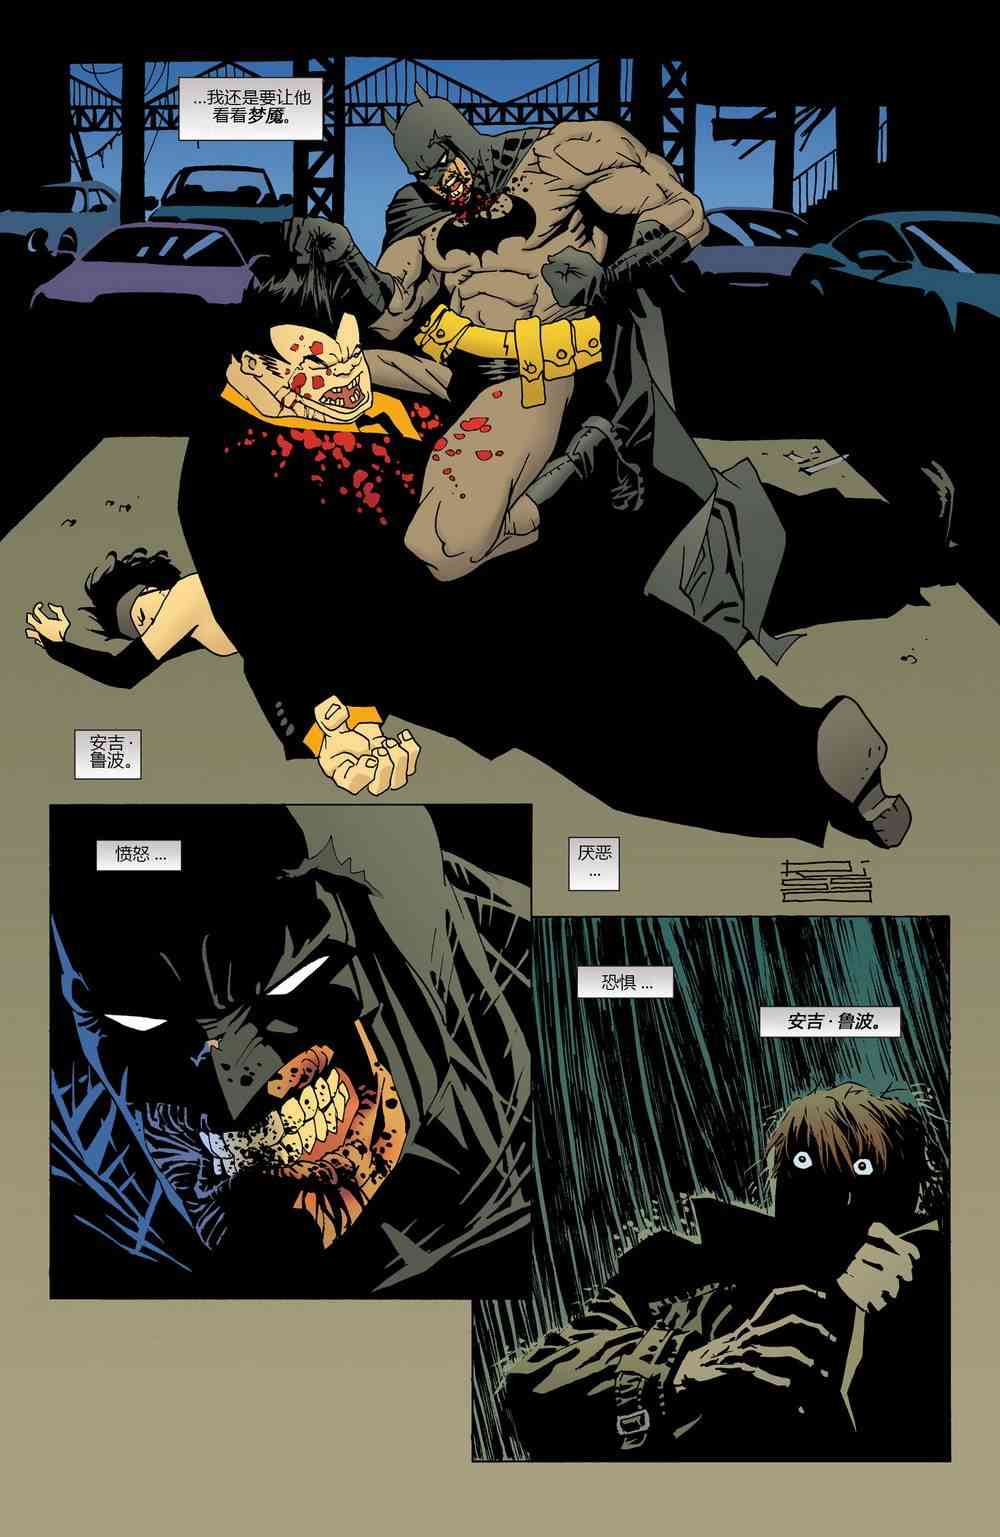 蝙蝠侠 - 第624卷破碎城市#5 - 2